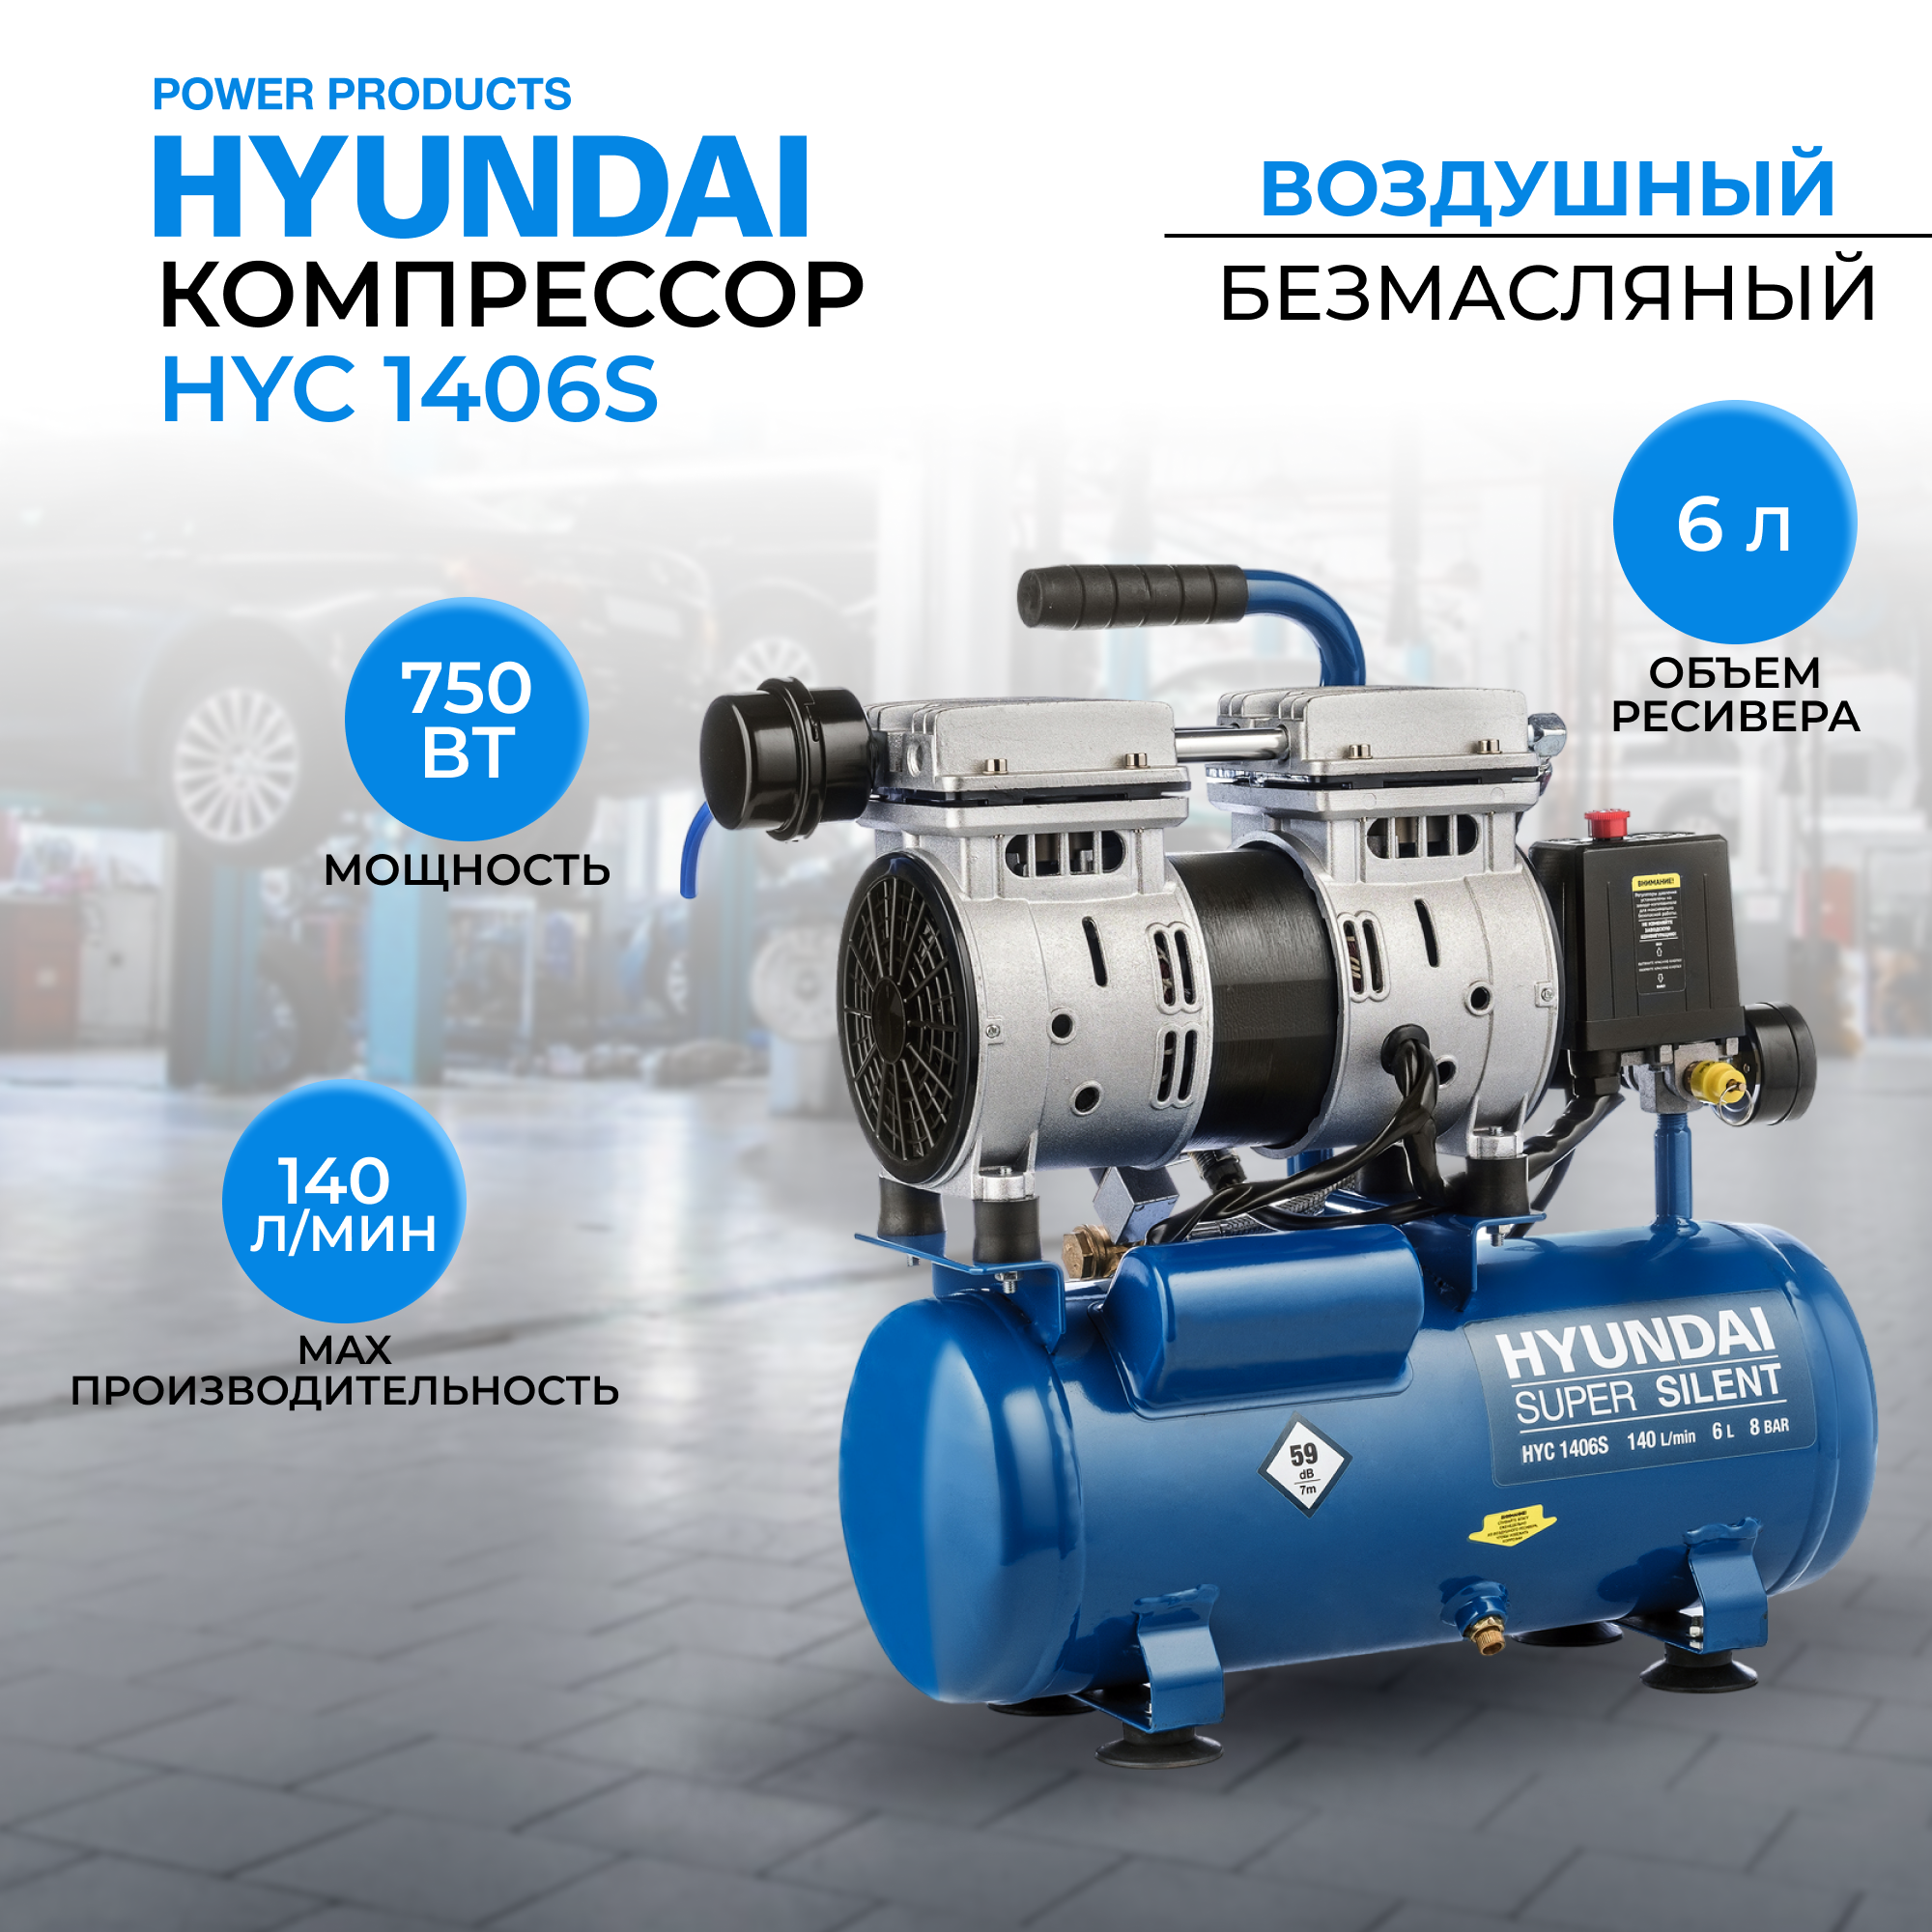 Воздушный поршневой компрессор Hyundai HYC 1406S безмасляный (140 л/мин, 750Вт, 8 бар) компрессор воздушный безмасляный eco ae 50 of1